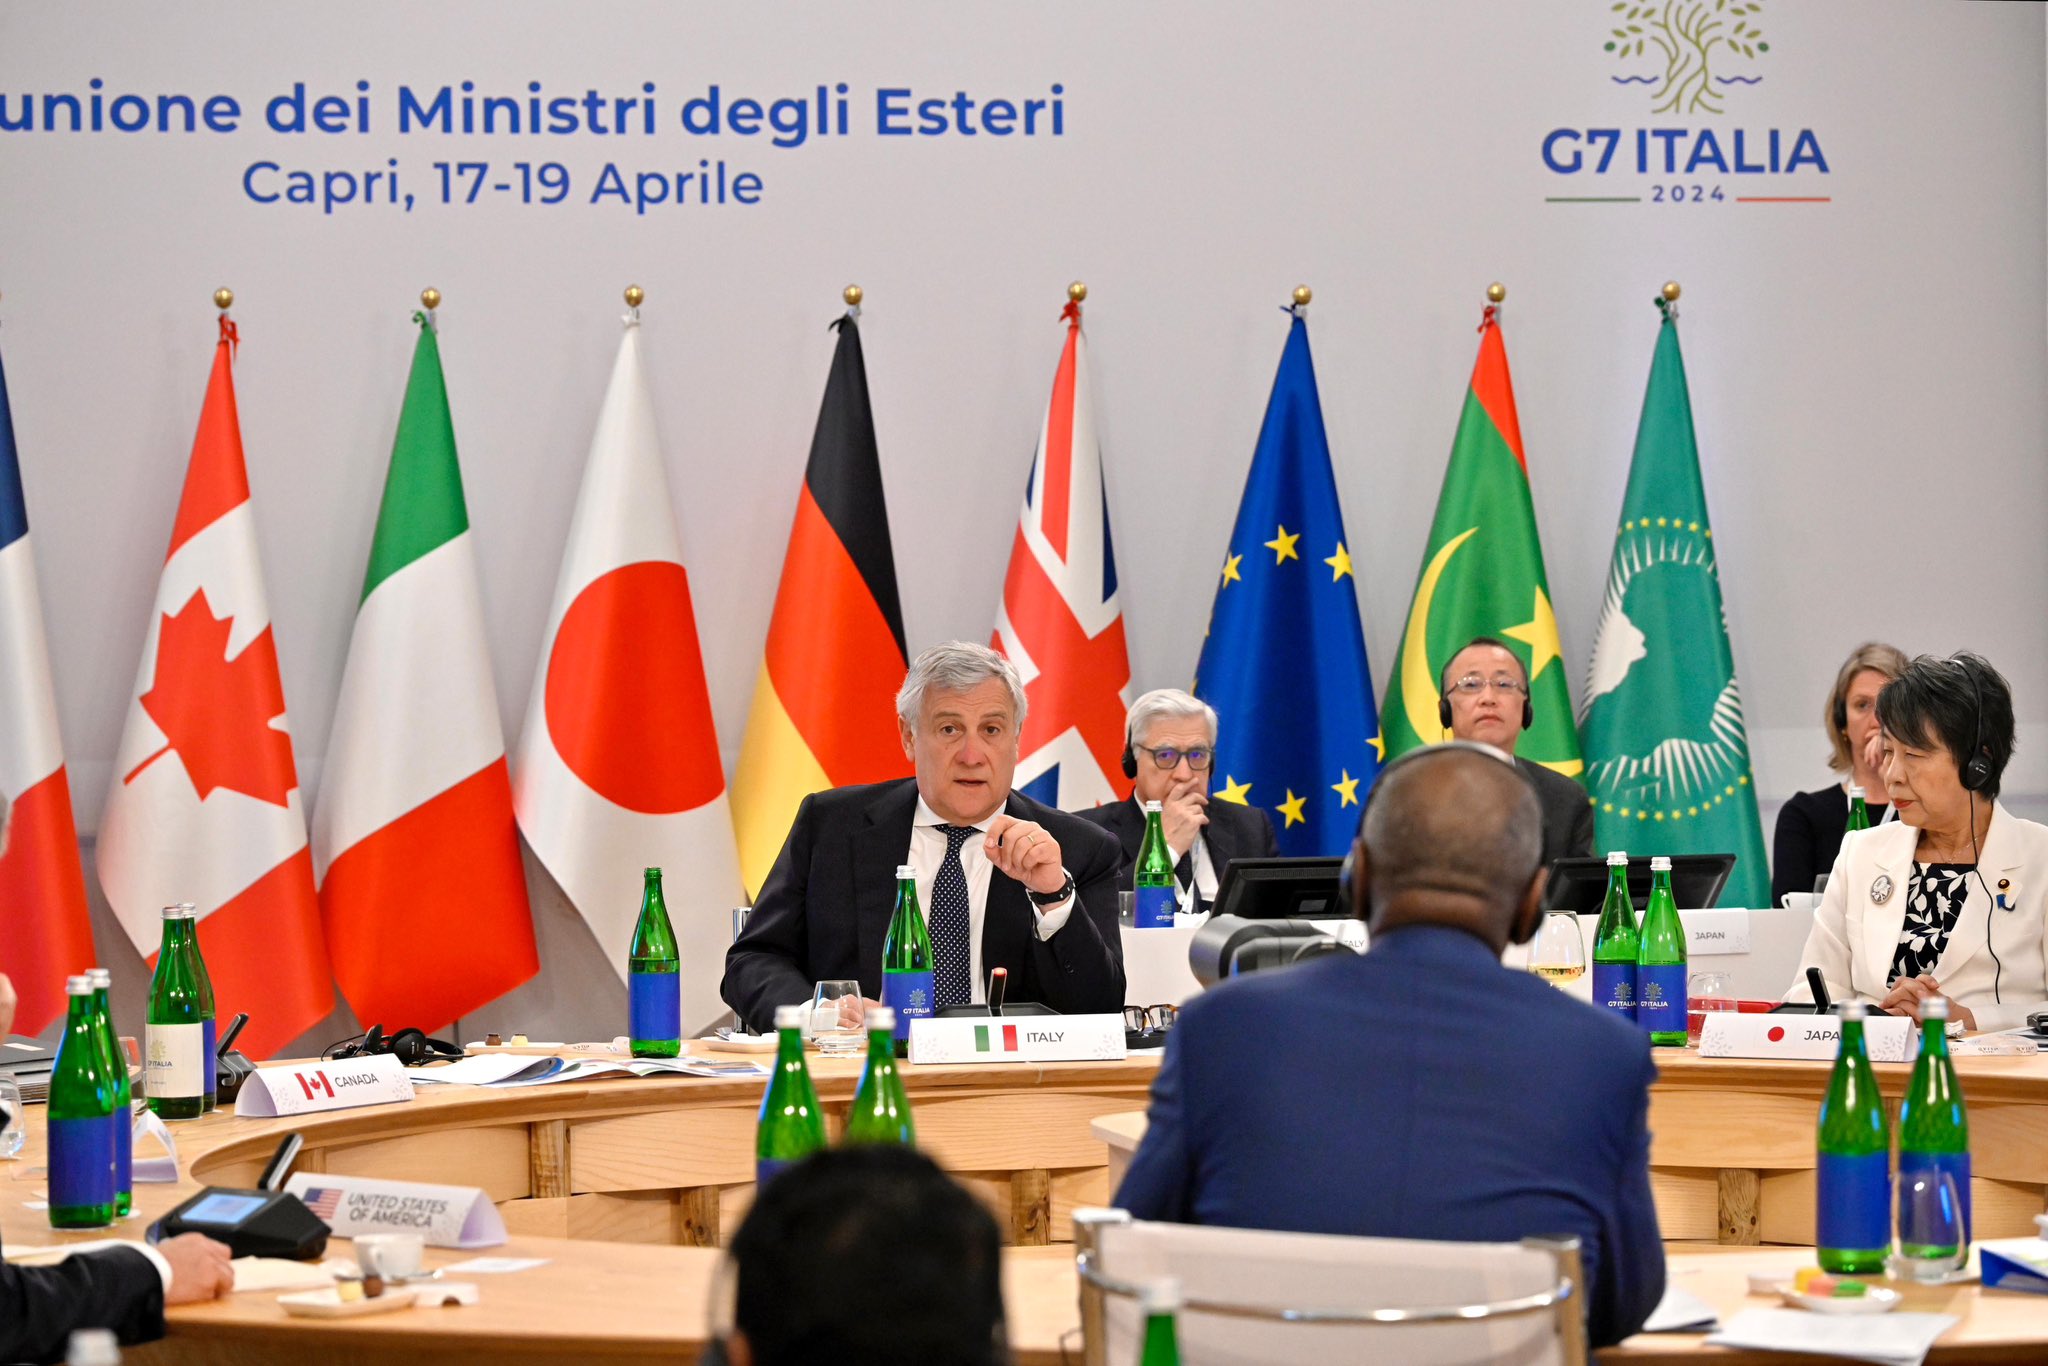 Piano Mattei, Medio Oriente e Nato. Tutti gli spunti del G7 da Capri